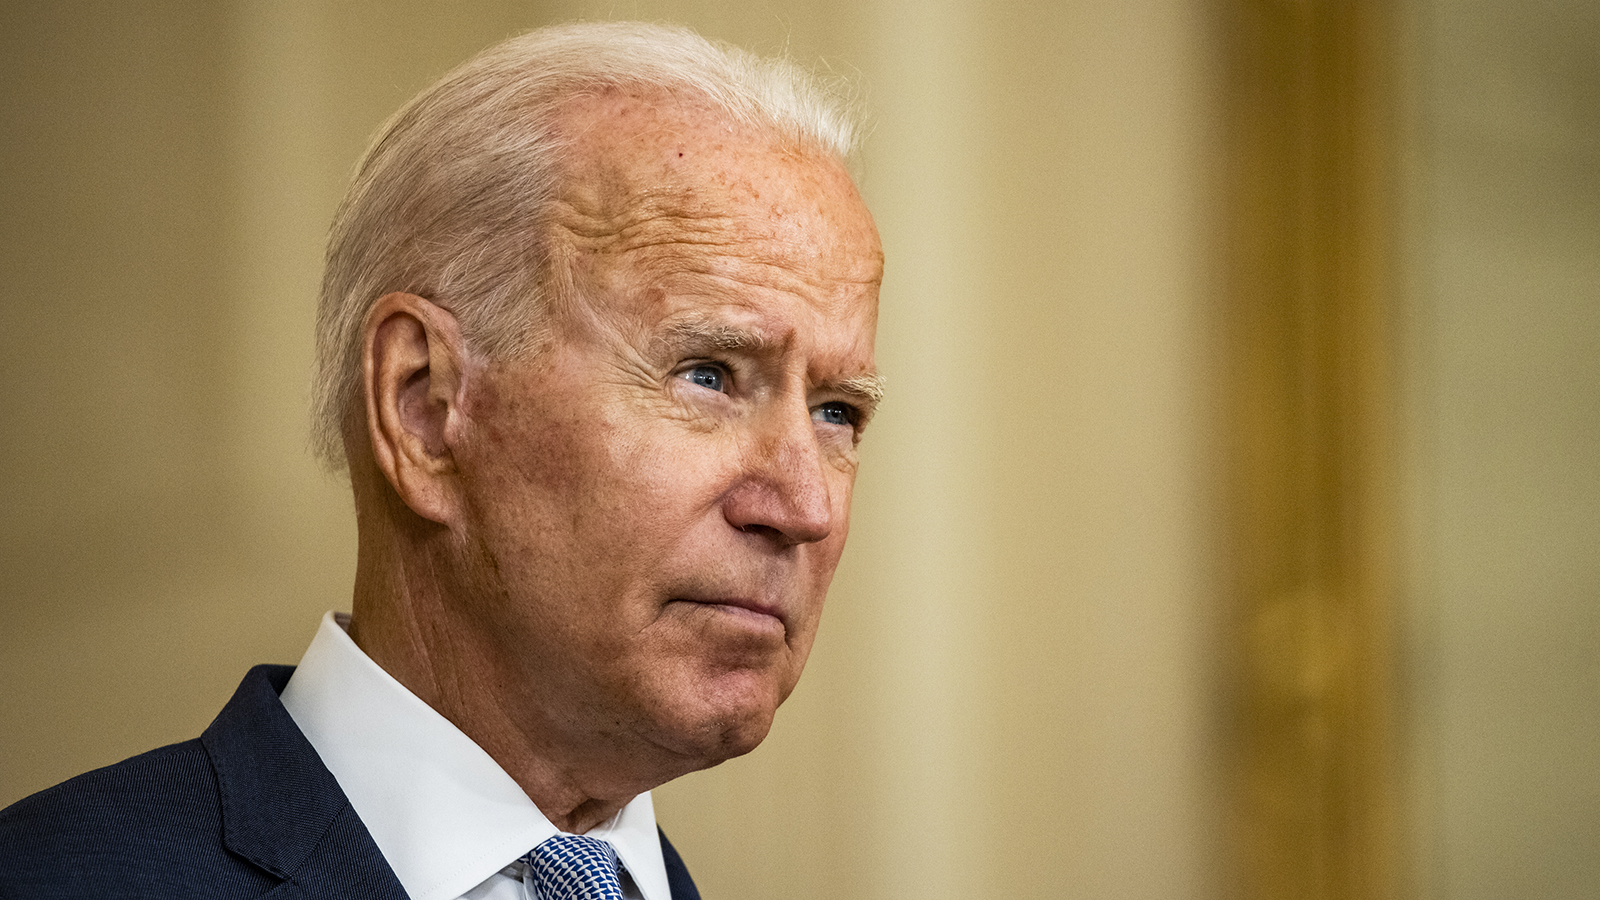 President Joe Biden speaks in the East Room of the White House in Washington on Thursday.